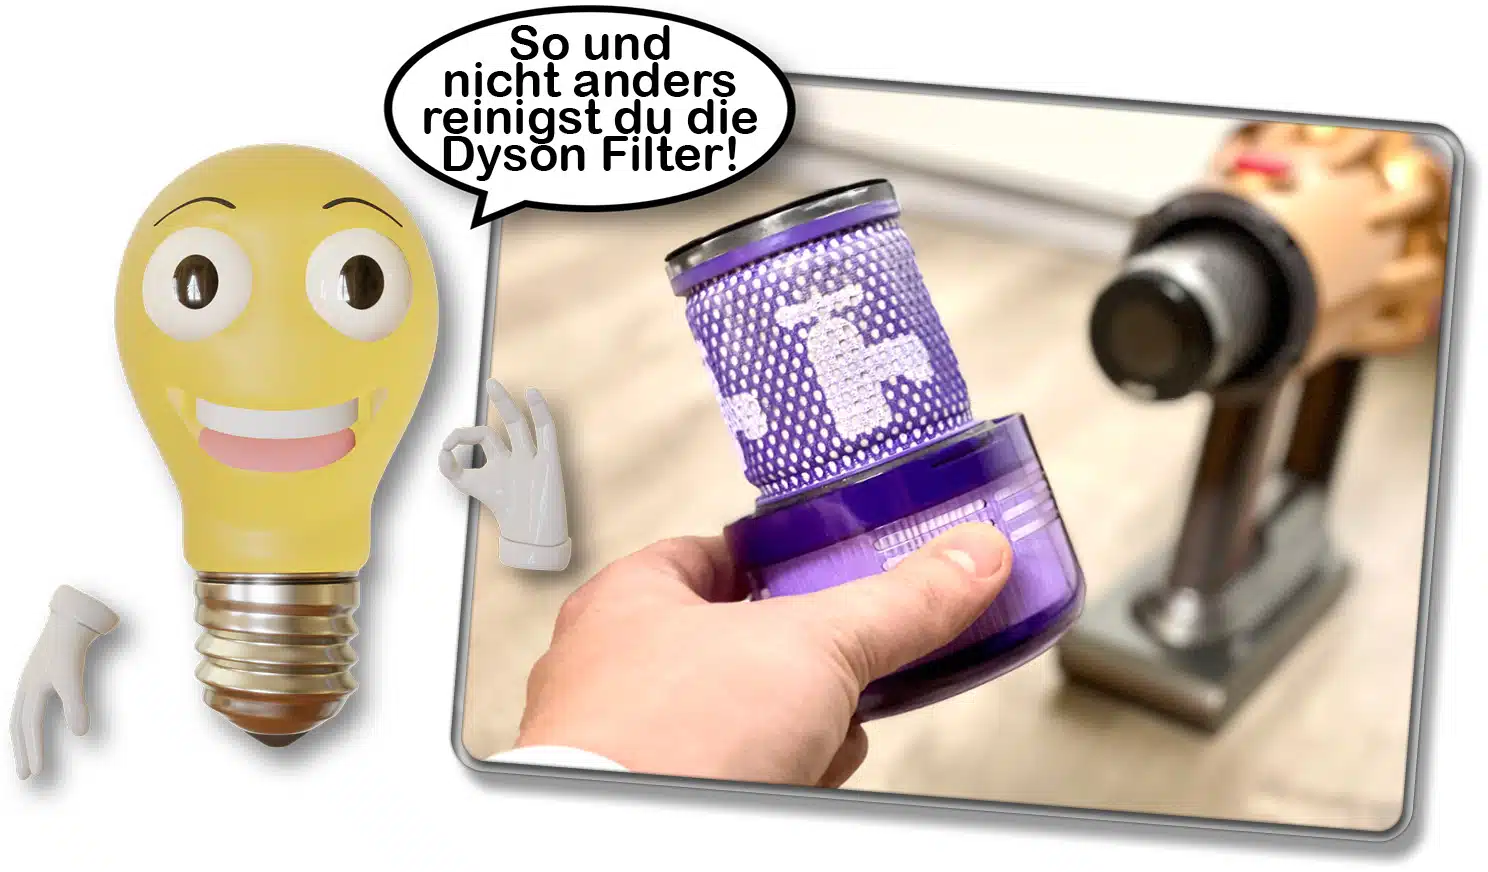 Volharding dikte syndroom Dyson Akkusauger Filter reinigen und waschen - So gehts!